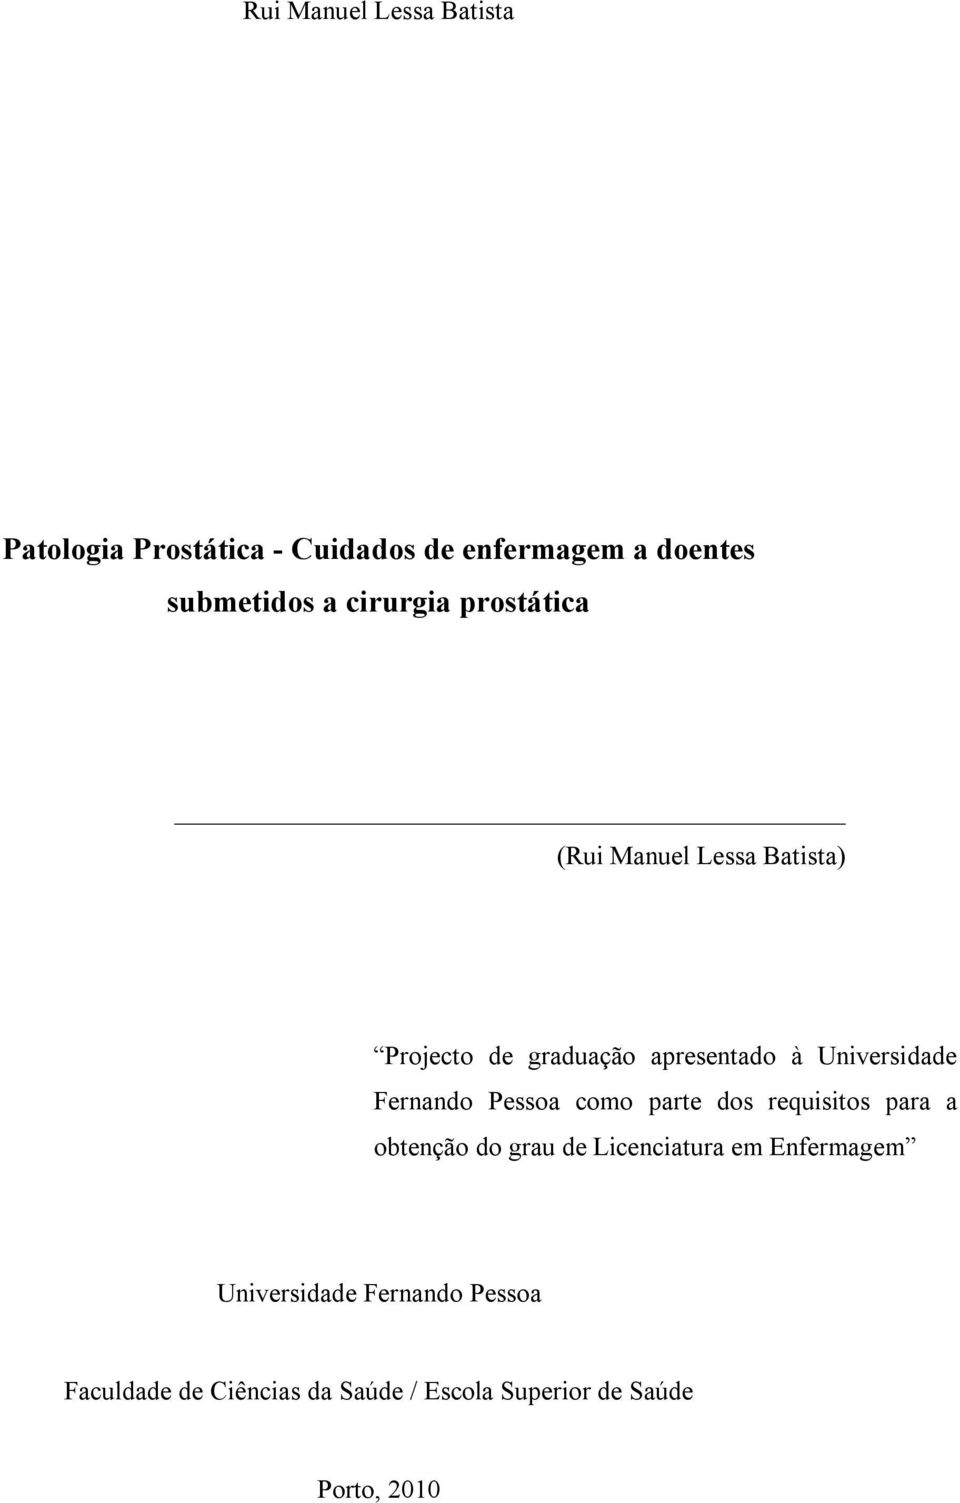 Fernando Pessoa como parte dos requisitos para a obtenção do grau de Licenciatura em Enfermagem